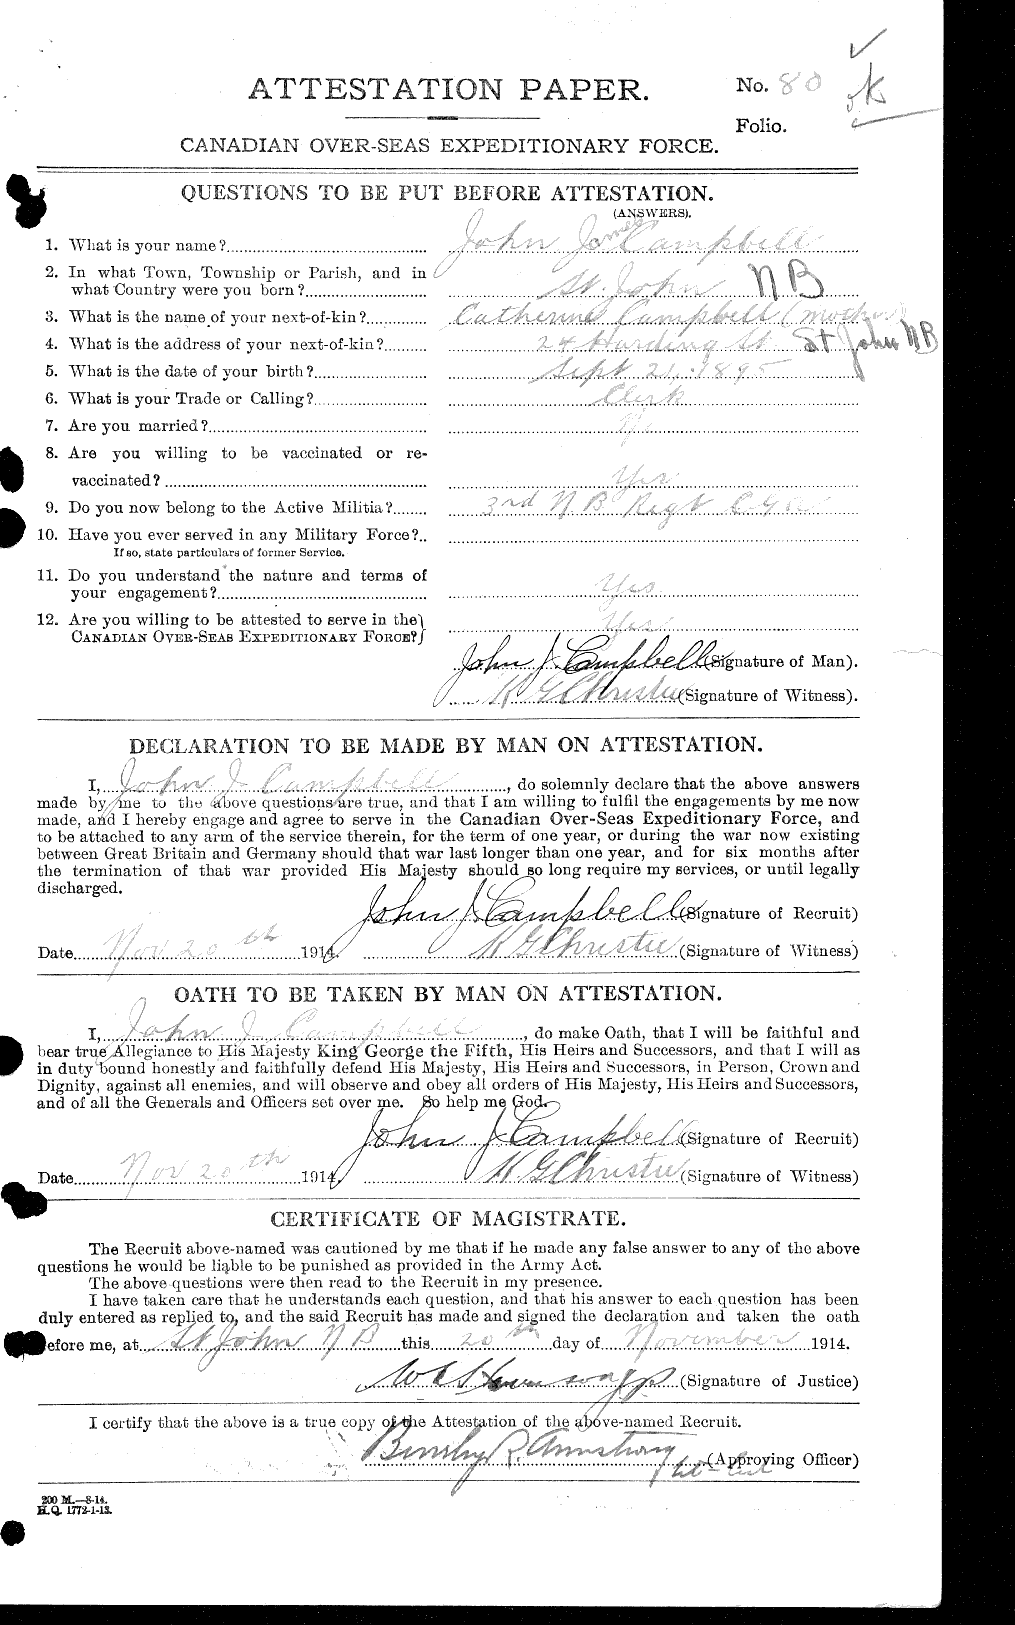 Dossiers du Personnel de la Première Guerre mondiale - CEC 008541a